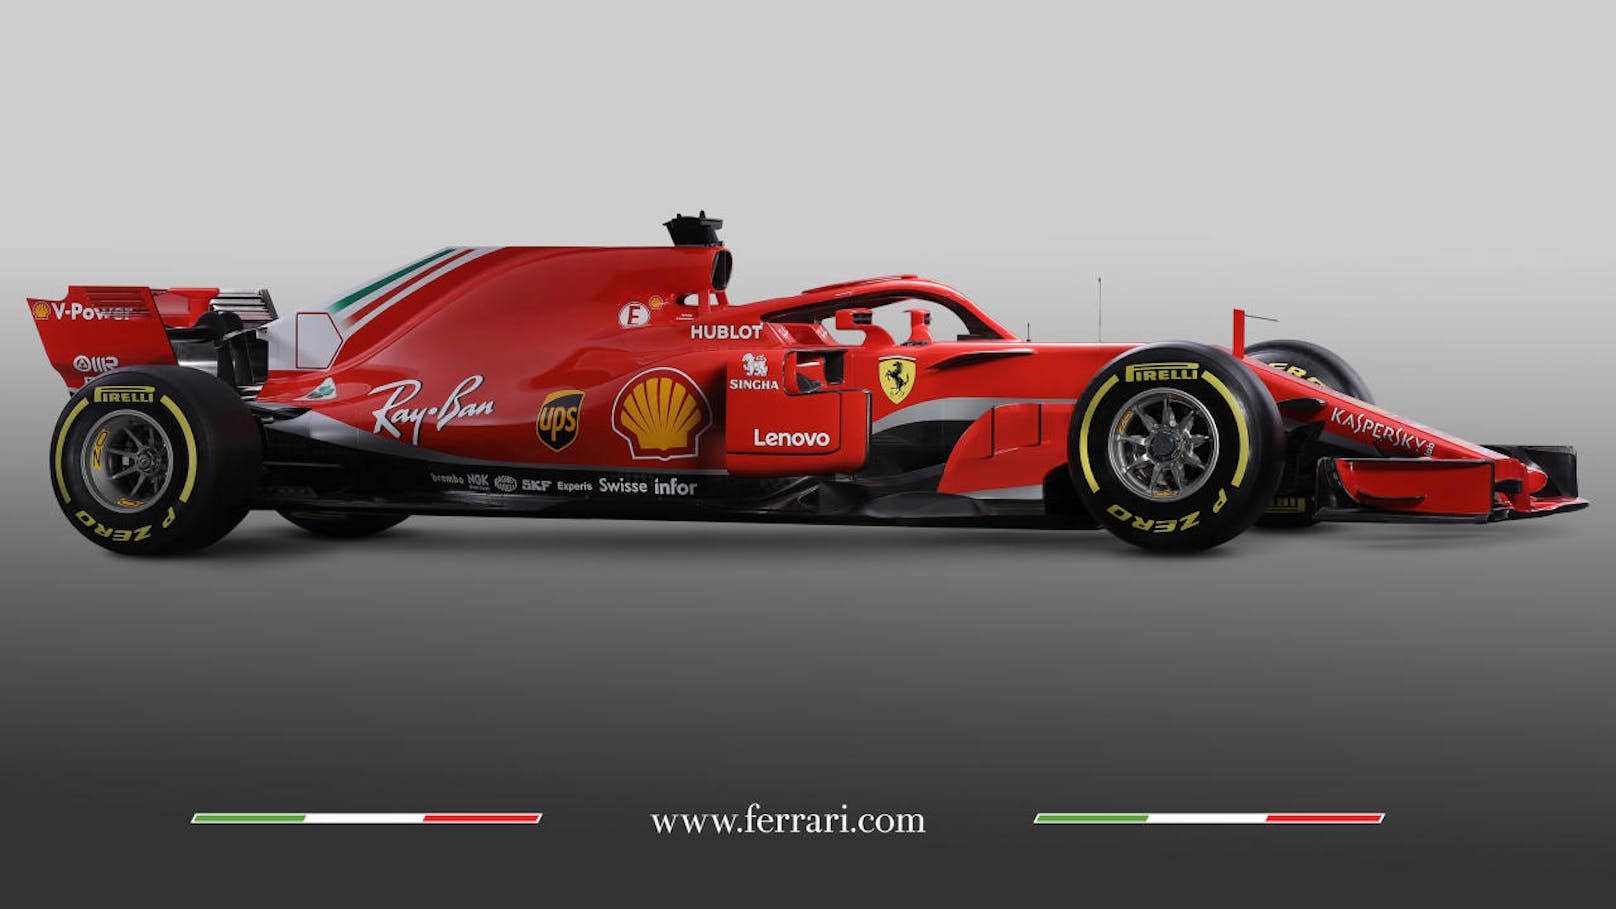 Die "Rote Göttin" im neuen Gewand! "Heute" hat die besten Bilder des brandneuen Formel-1-Ferraris.